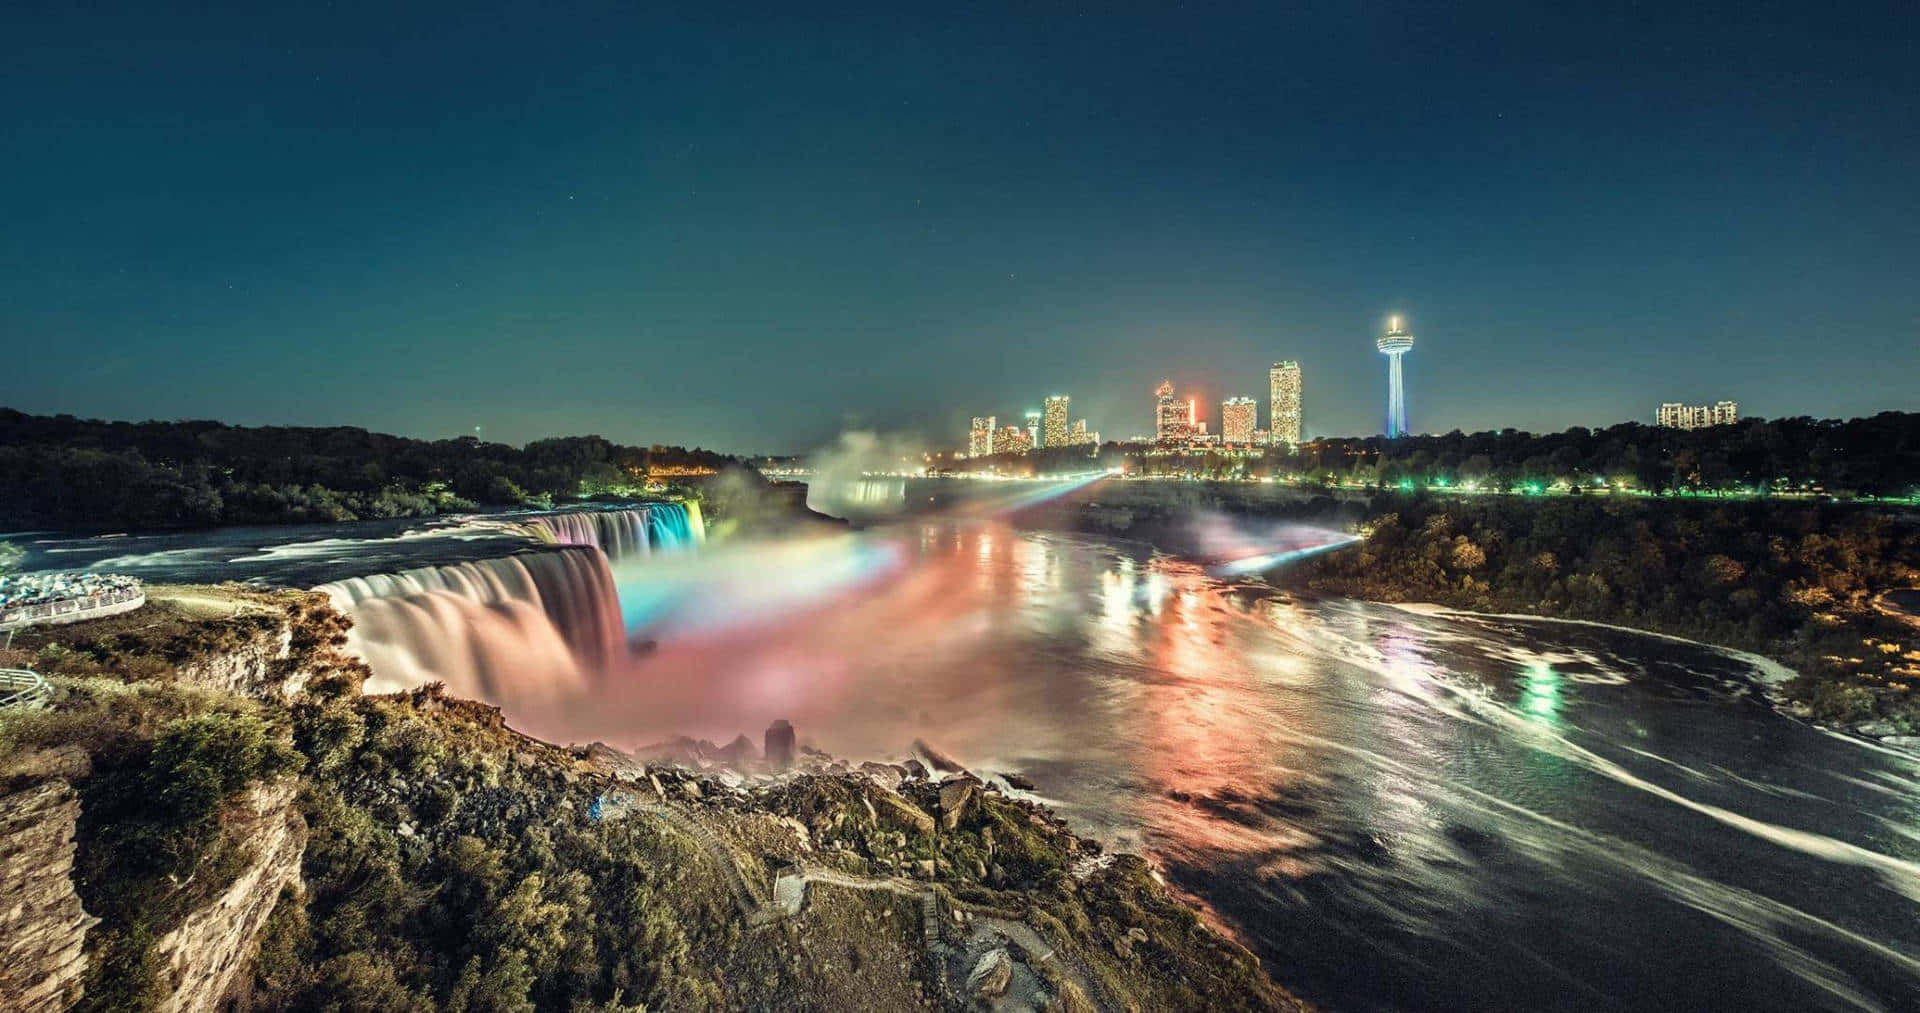 Niagara Falls At Night With Colorful Lights